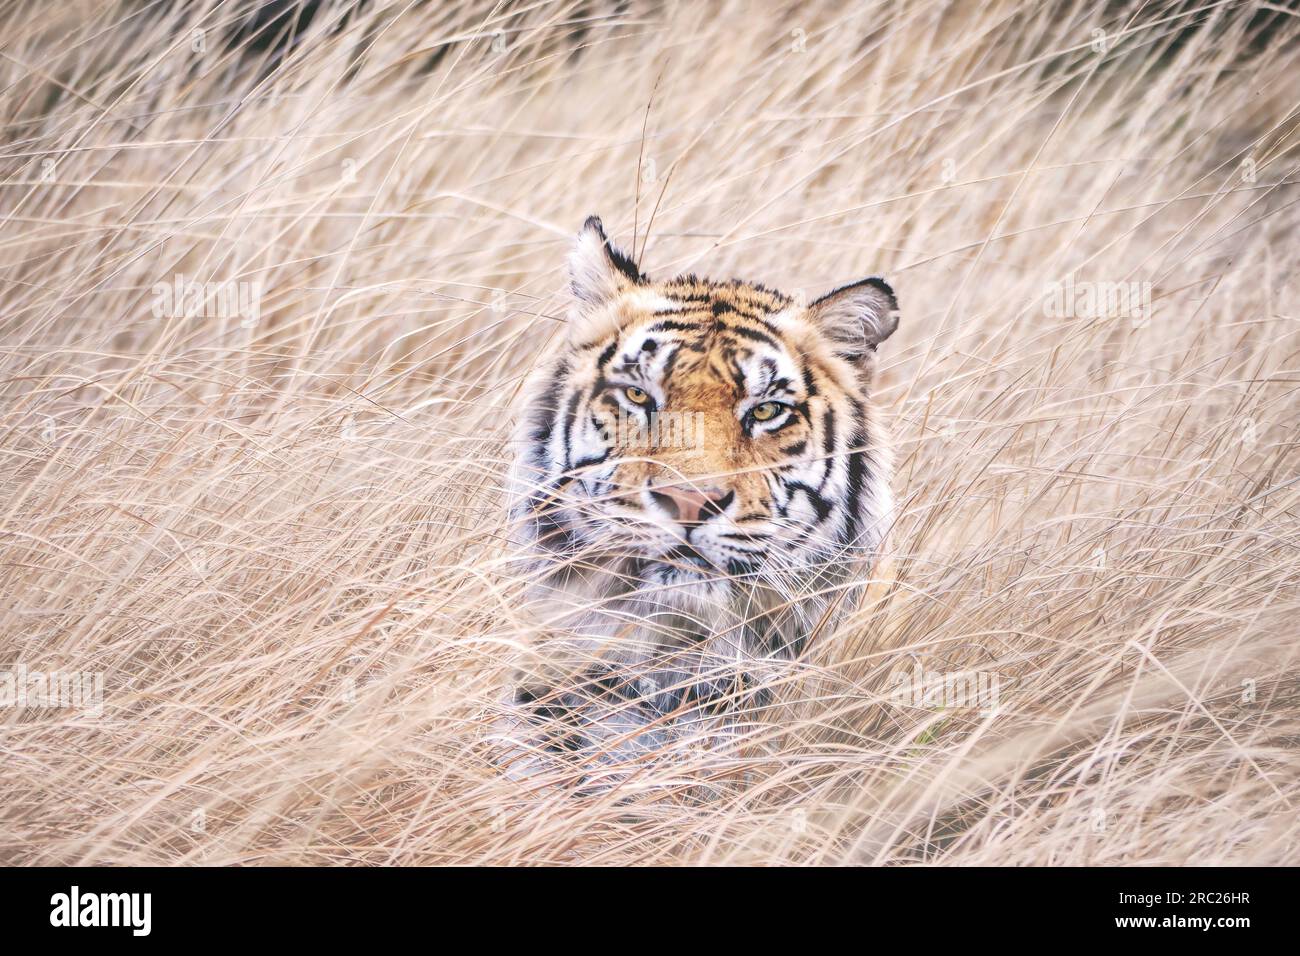 Portrait d'un tigre mâle regardant directement la caméra. Il est presque complètement caché par de longues herbes dont le mouvement est brouillé par le vent. Banque D'Images